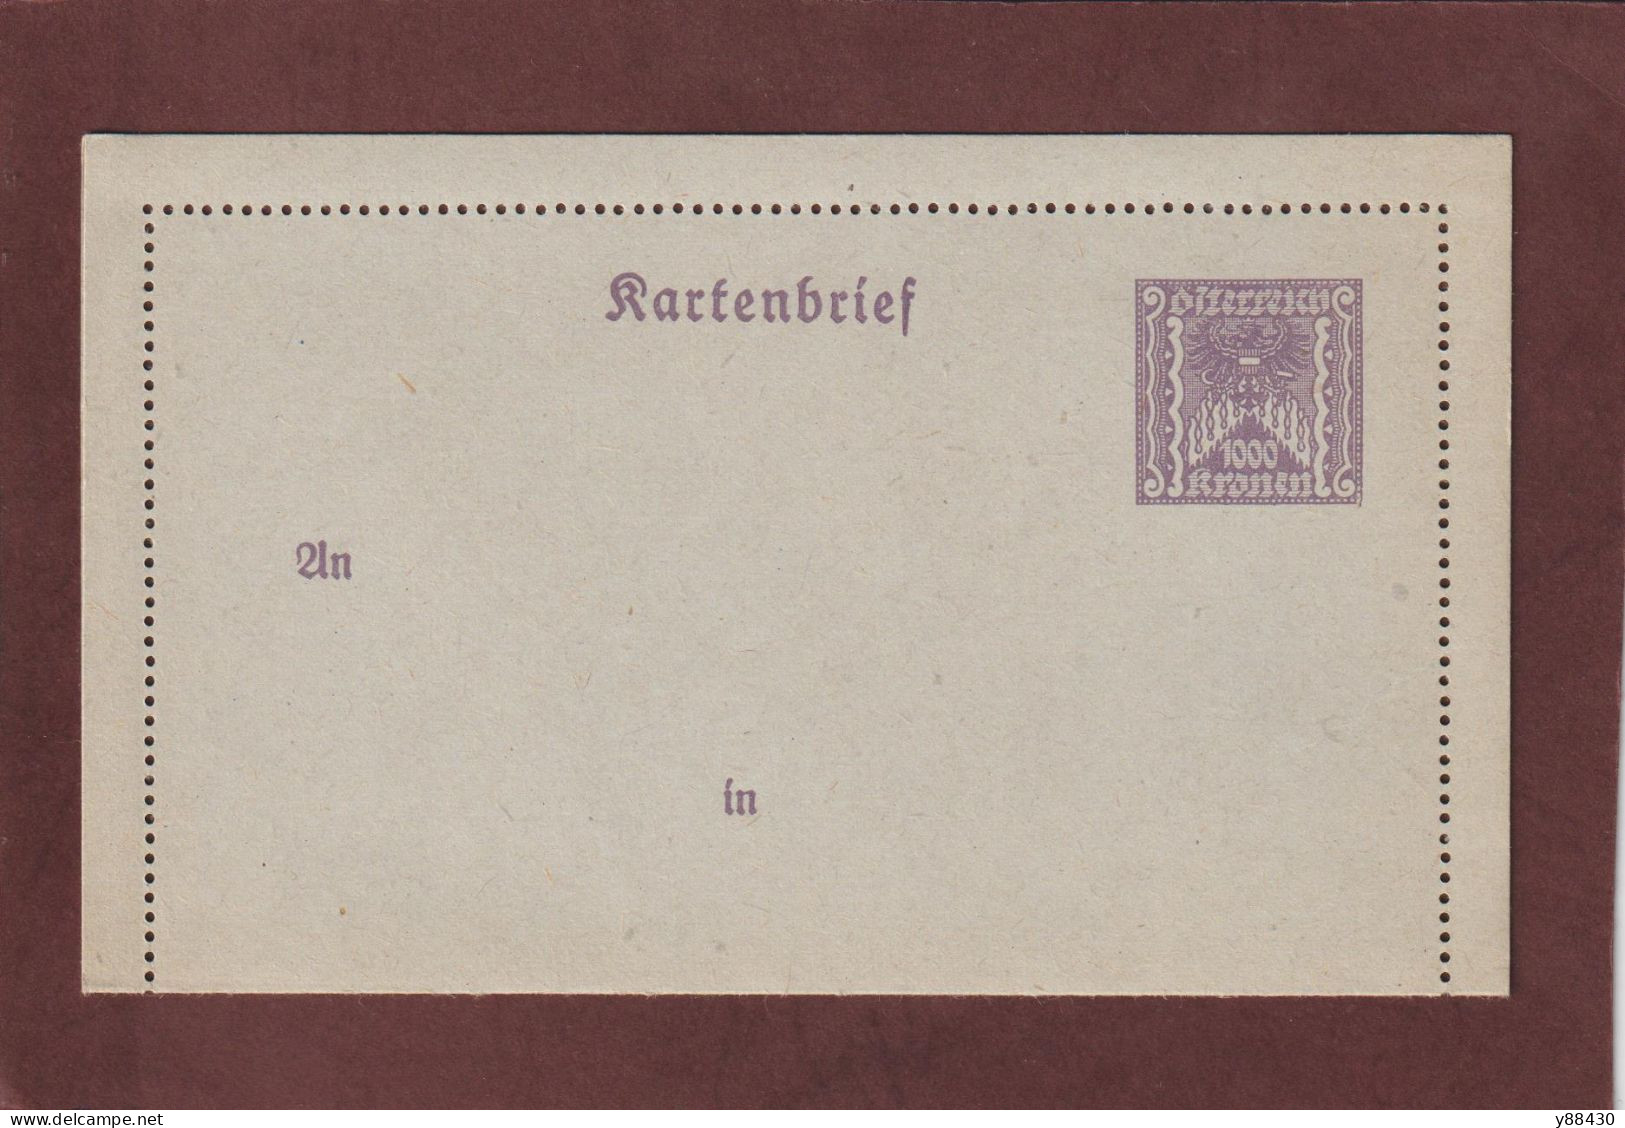 AUTRICHE - Entier Postal Neuf - 1910/1930 - Entier Sur Carte Lettre Gommé  - 1000k. Violet  - 5 Scan - Kartenbriefe